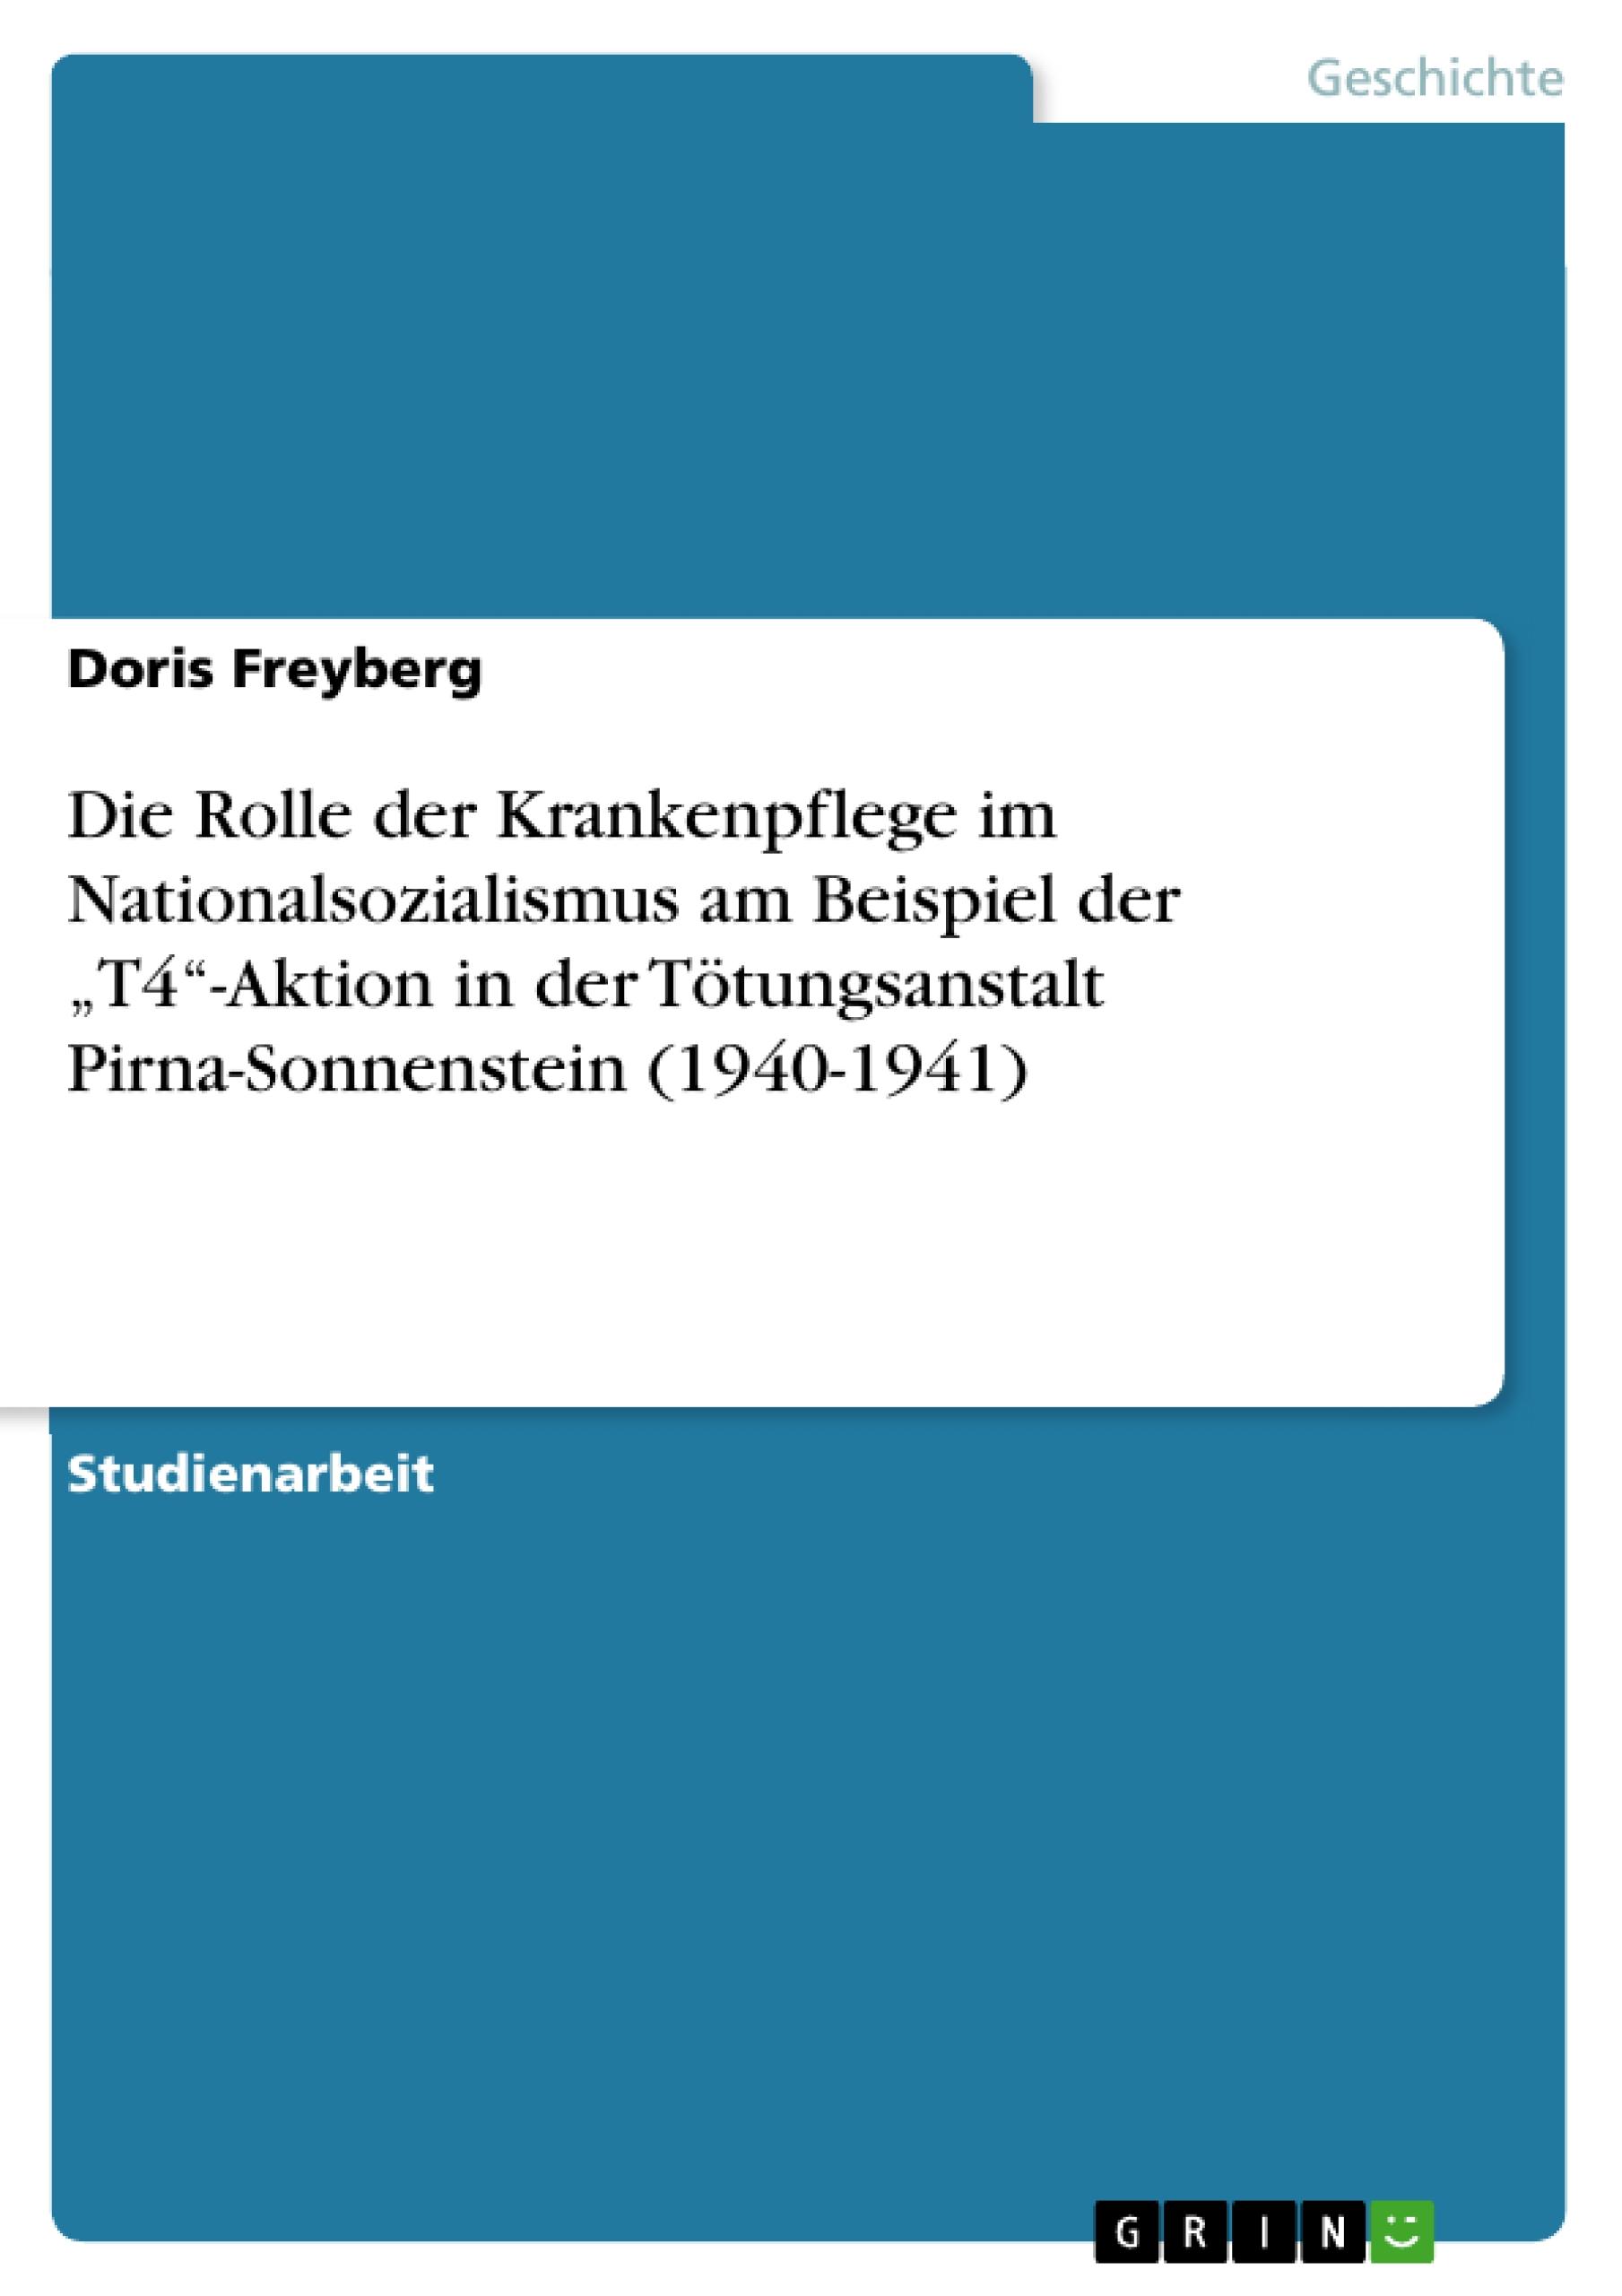 Die Rolle der Krankenpflege im Nationalsozialismus am Beispiel der T4 -Aktion in der Toetungsanstalt Pirna-Sonnenstein (1940-1941) - Freyberg, Doris